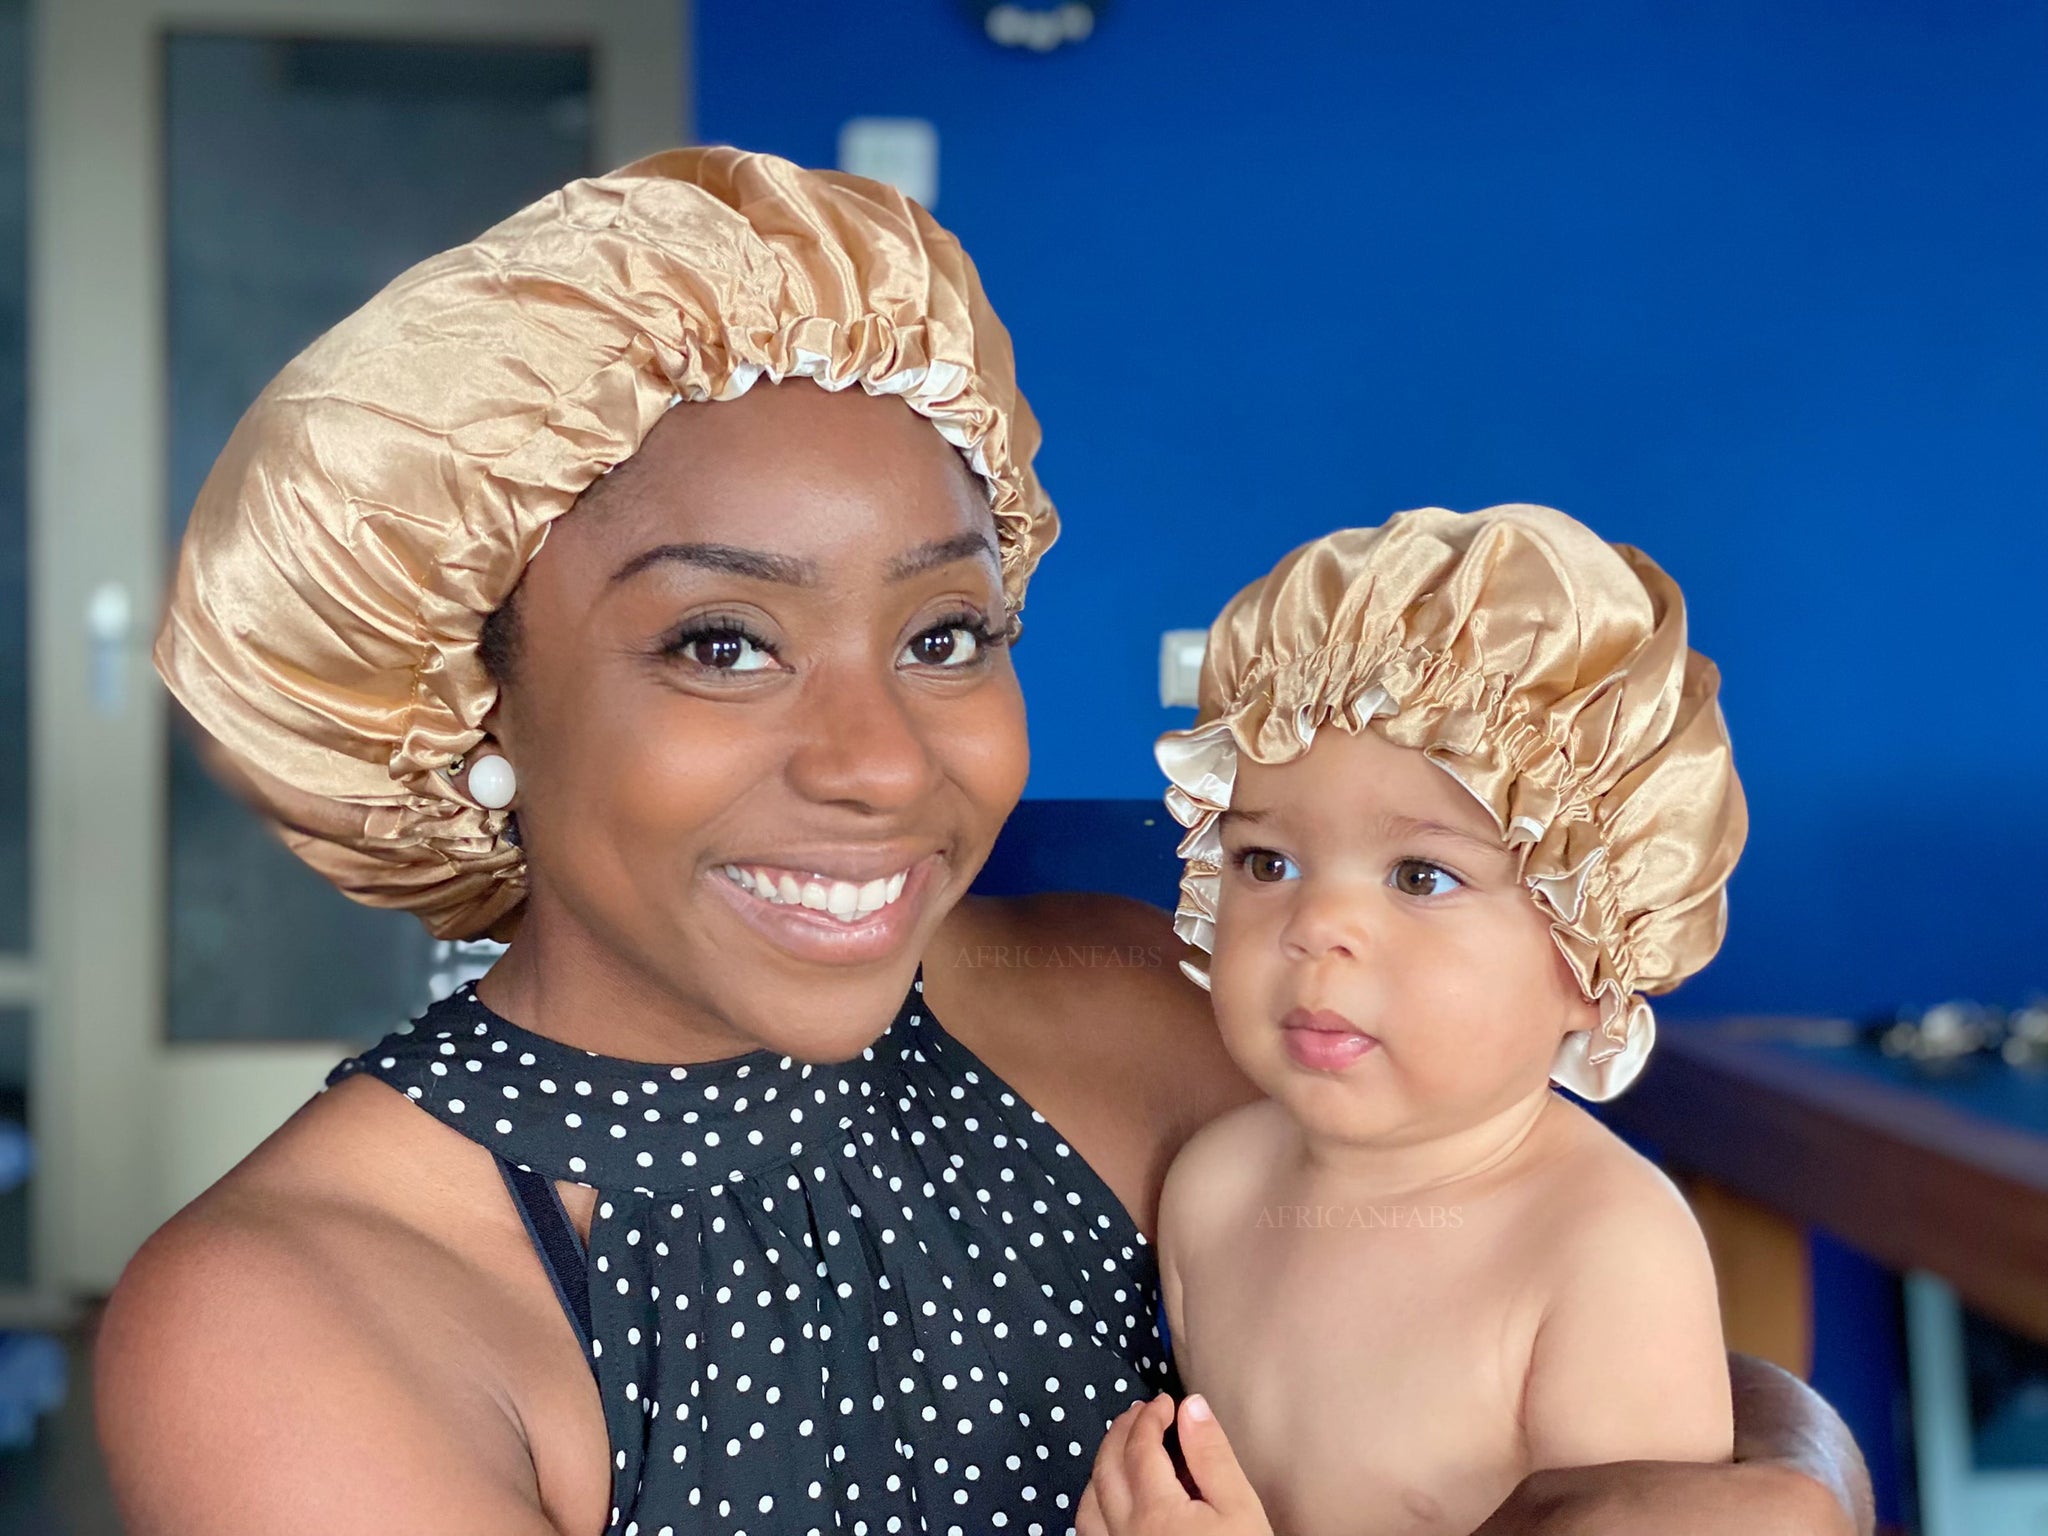 Khaki Satin Hair Bonnet (Kids / Children's size 3-7 years) (Reversable –  AfricanFabs